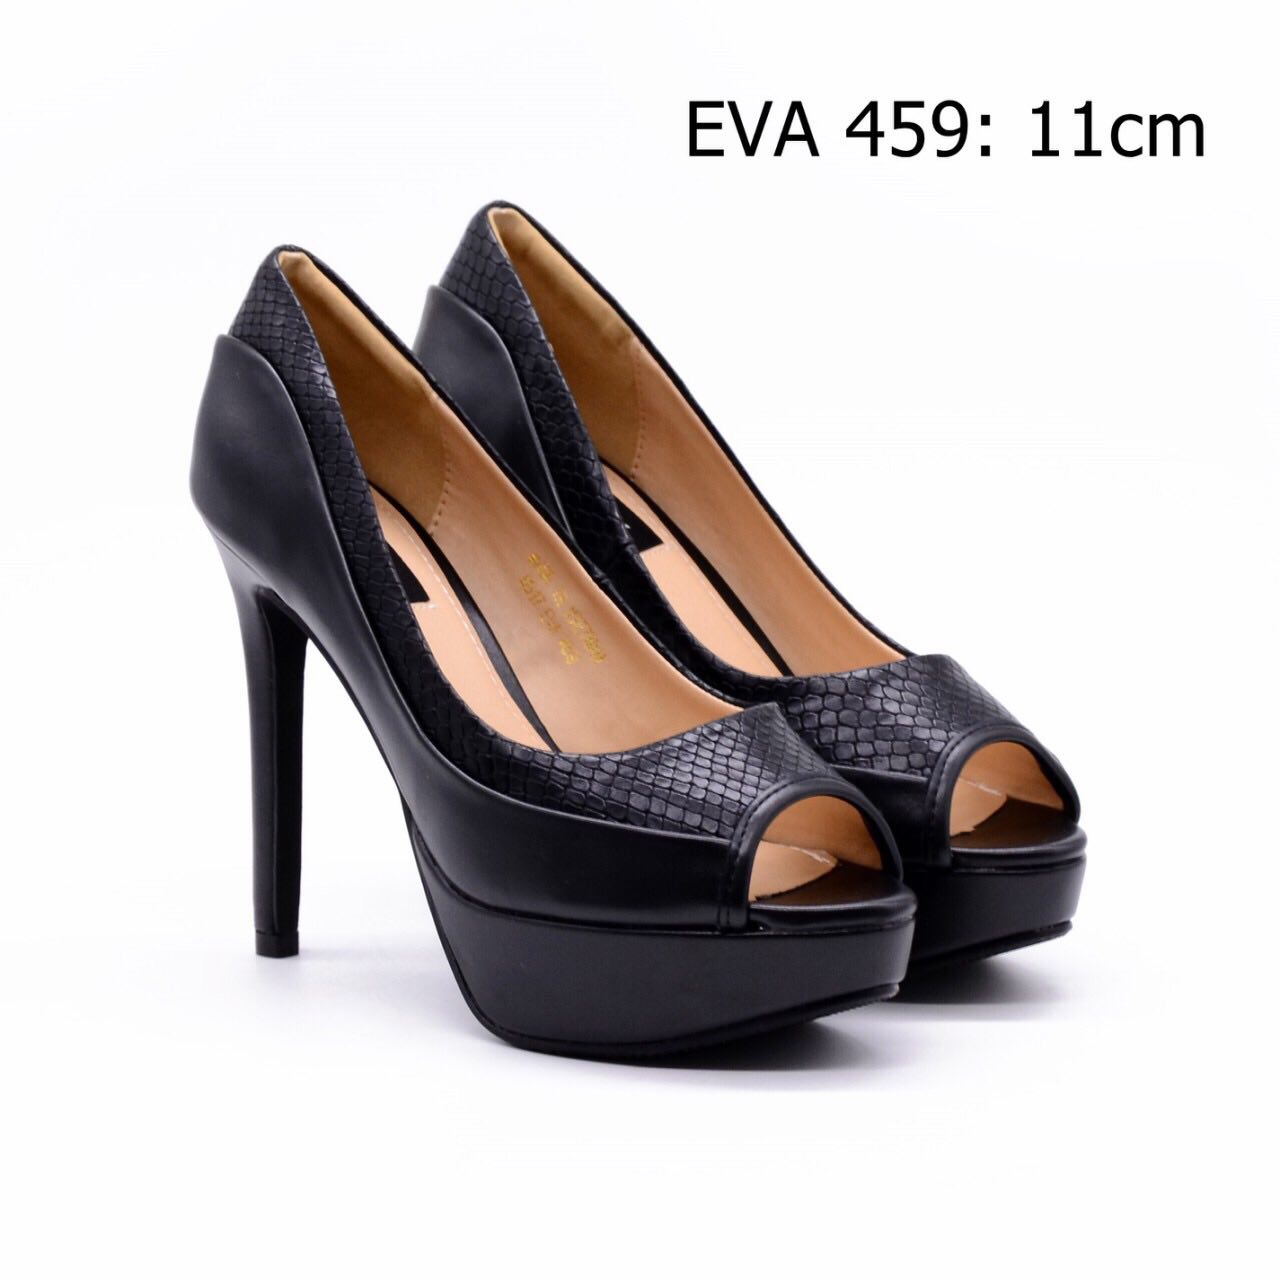 Giày cao gót đúp đế EVA459 kiểu dáng mới cao 11cm.